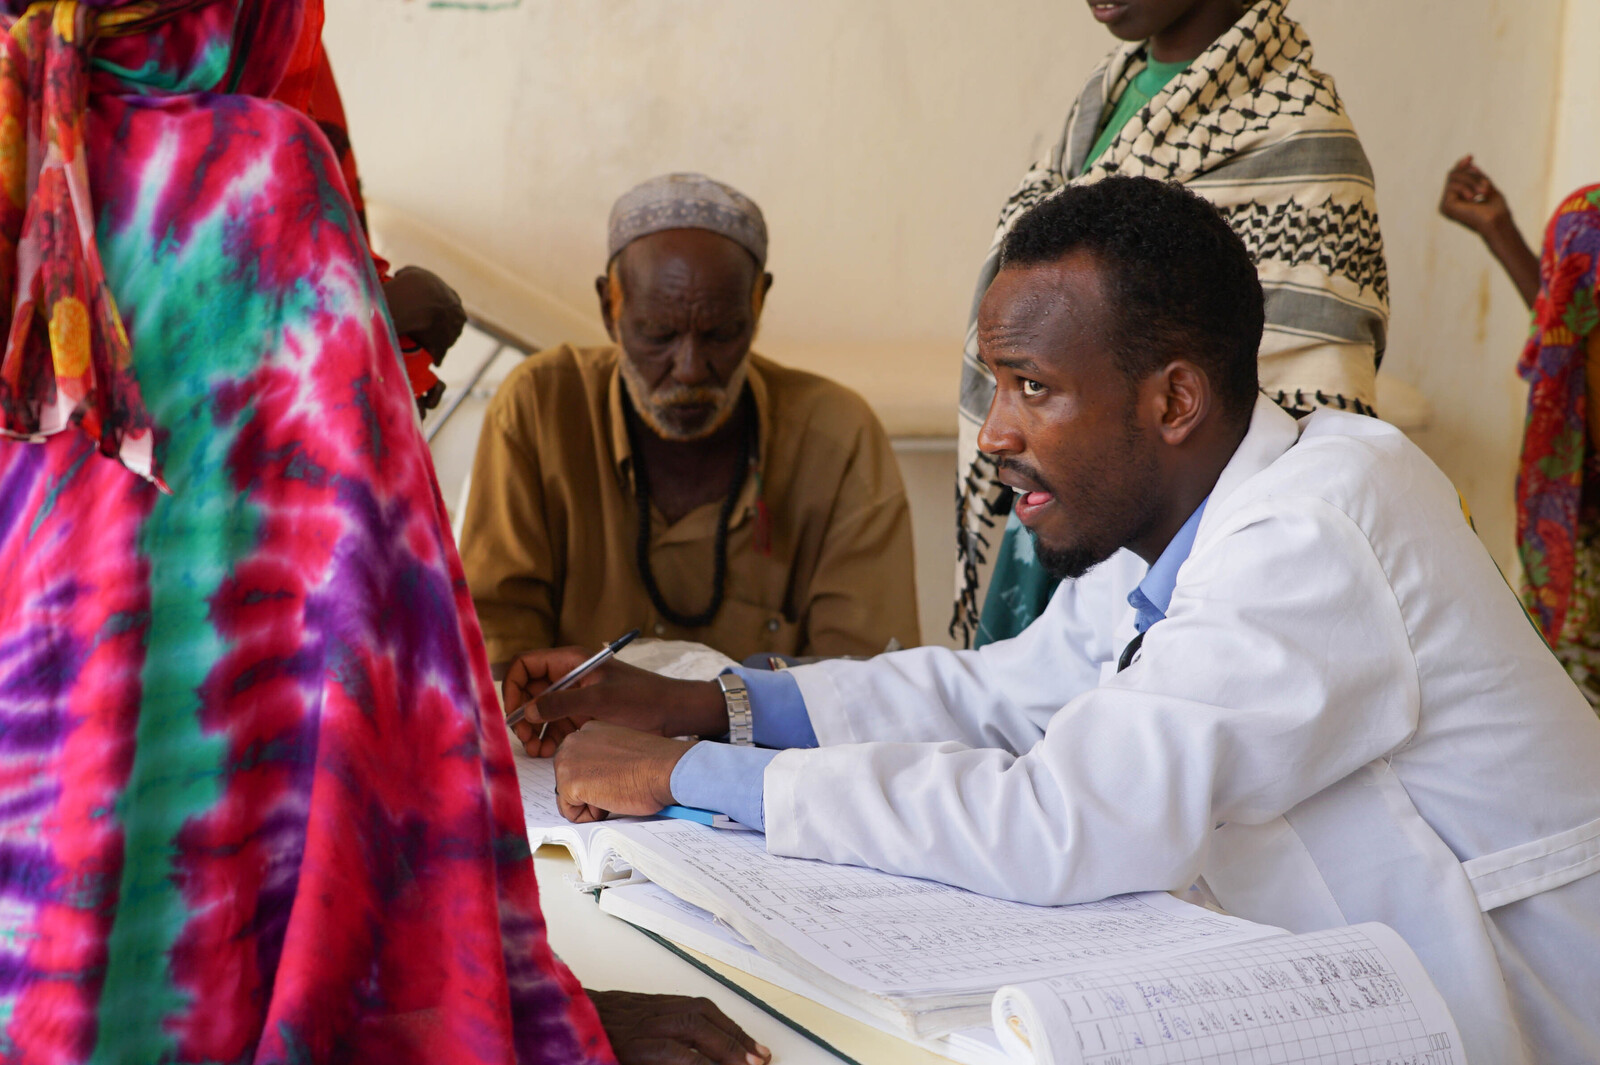 Viele unterernährte Kinder kommen in die Krankenstation in Somalia. Die Ärzte bemühen sich um deren Leben.